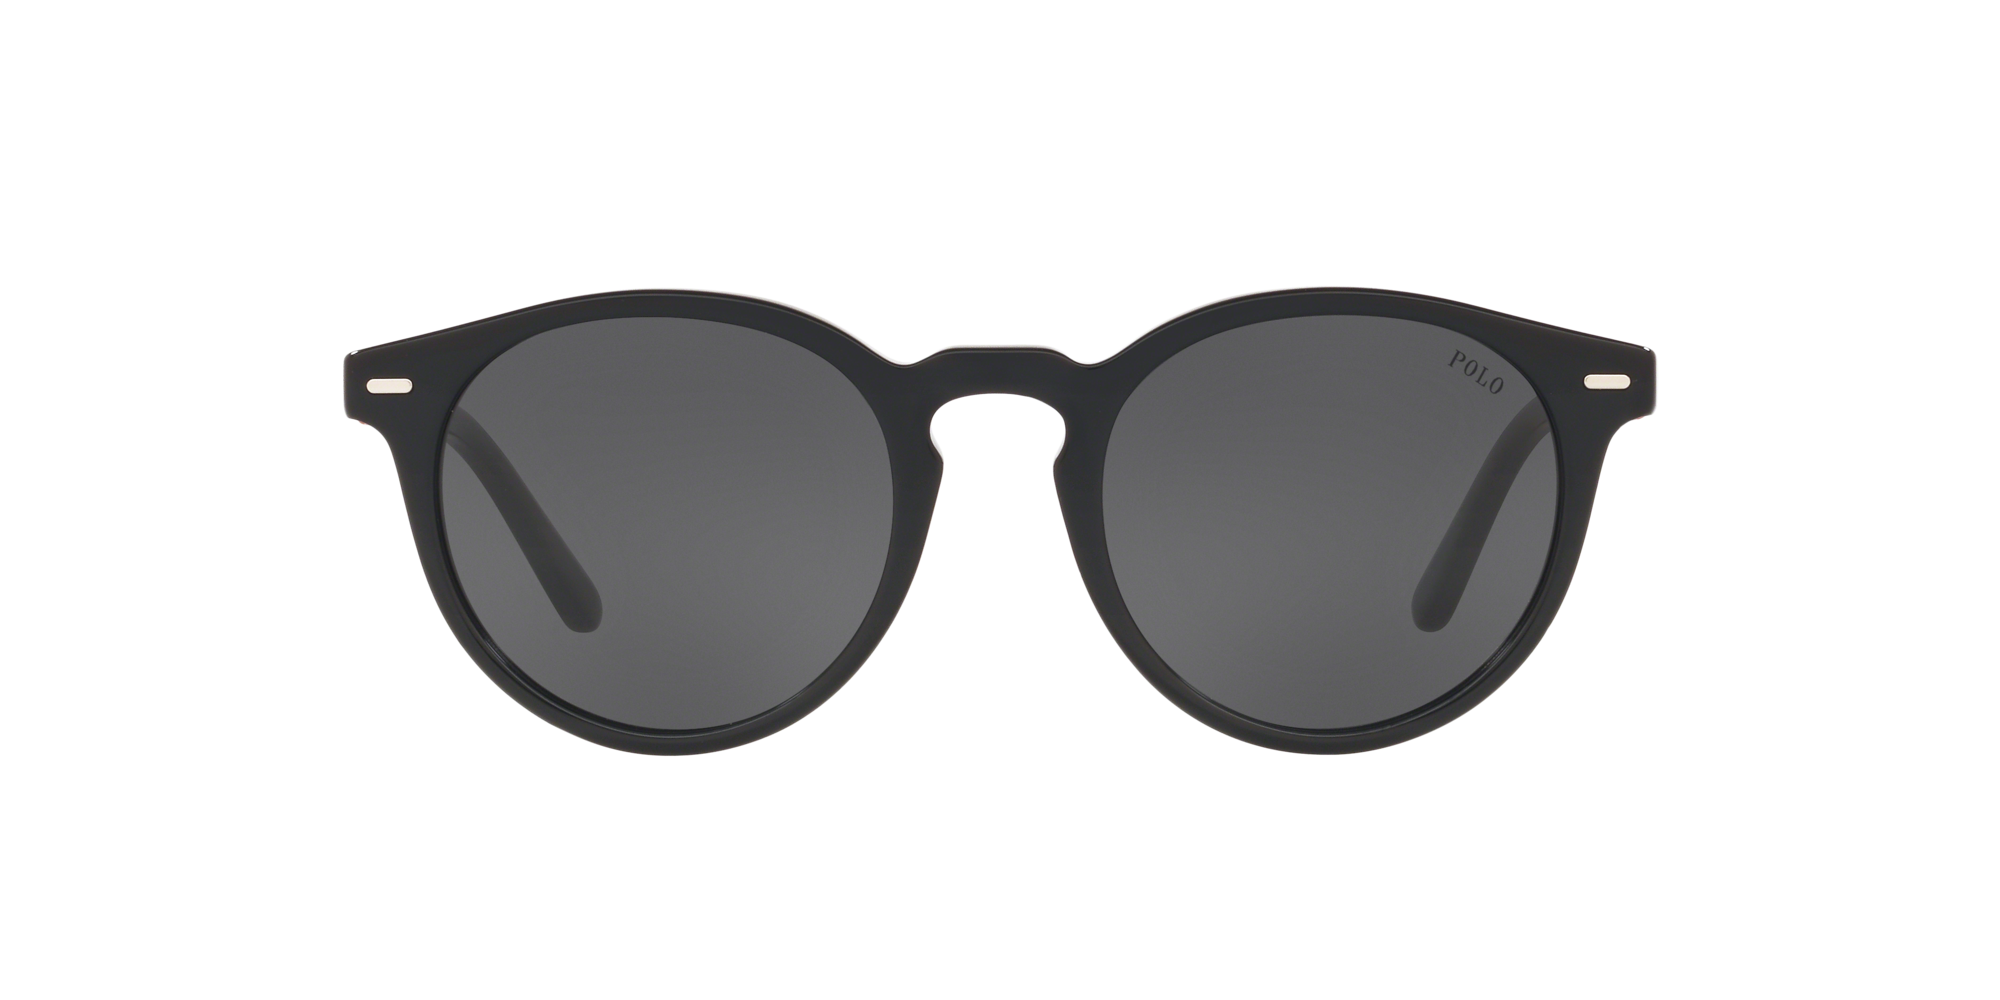 Polo Ralph Lauren Sonnenbrille PH4151 500187 schwarz glänzend